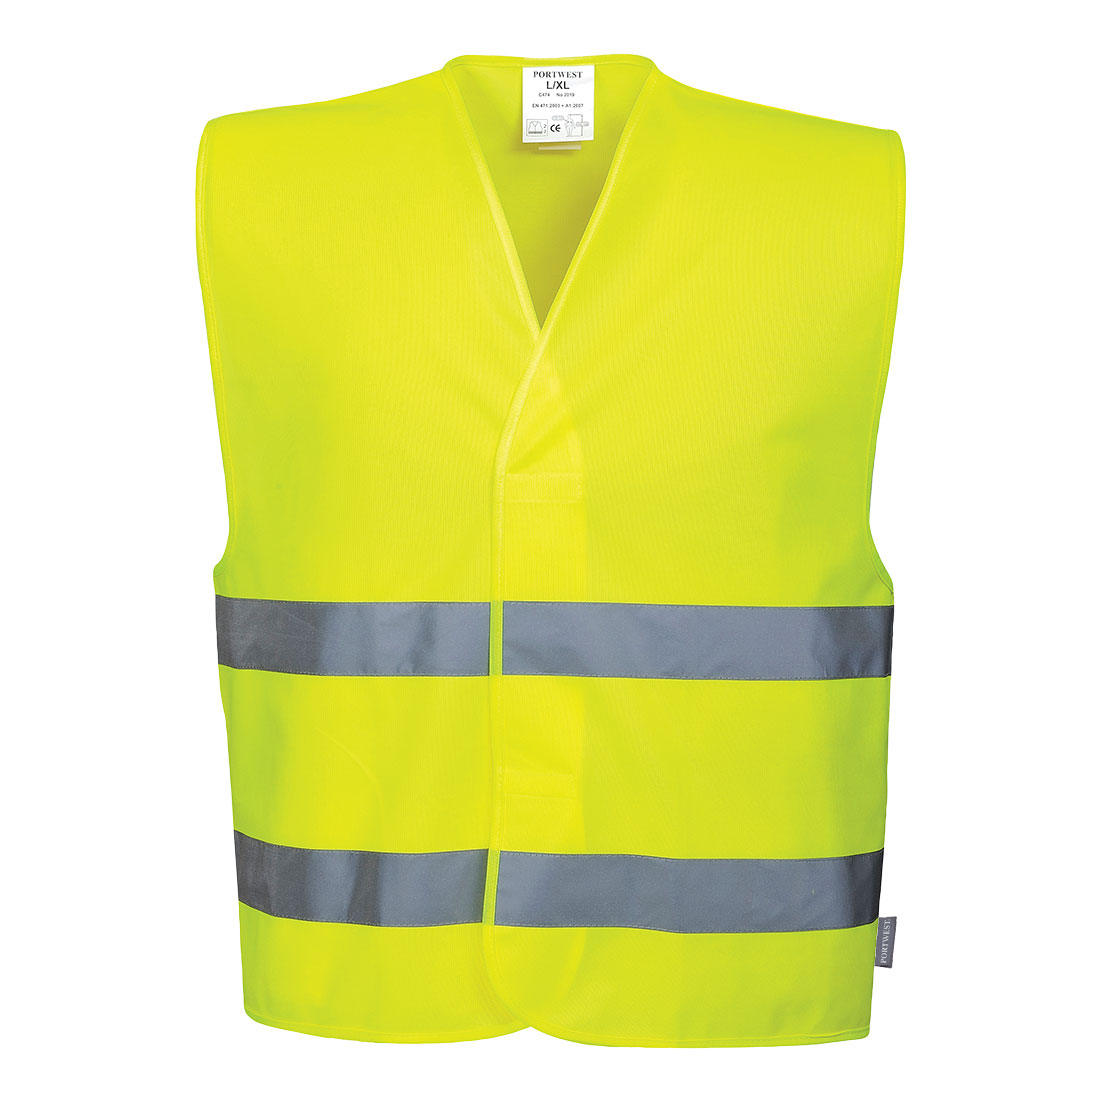 Reflexní vesta s dvěma pruhy Barva: žlutá, Velikost: 2XL/3XL